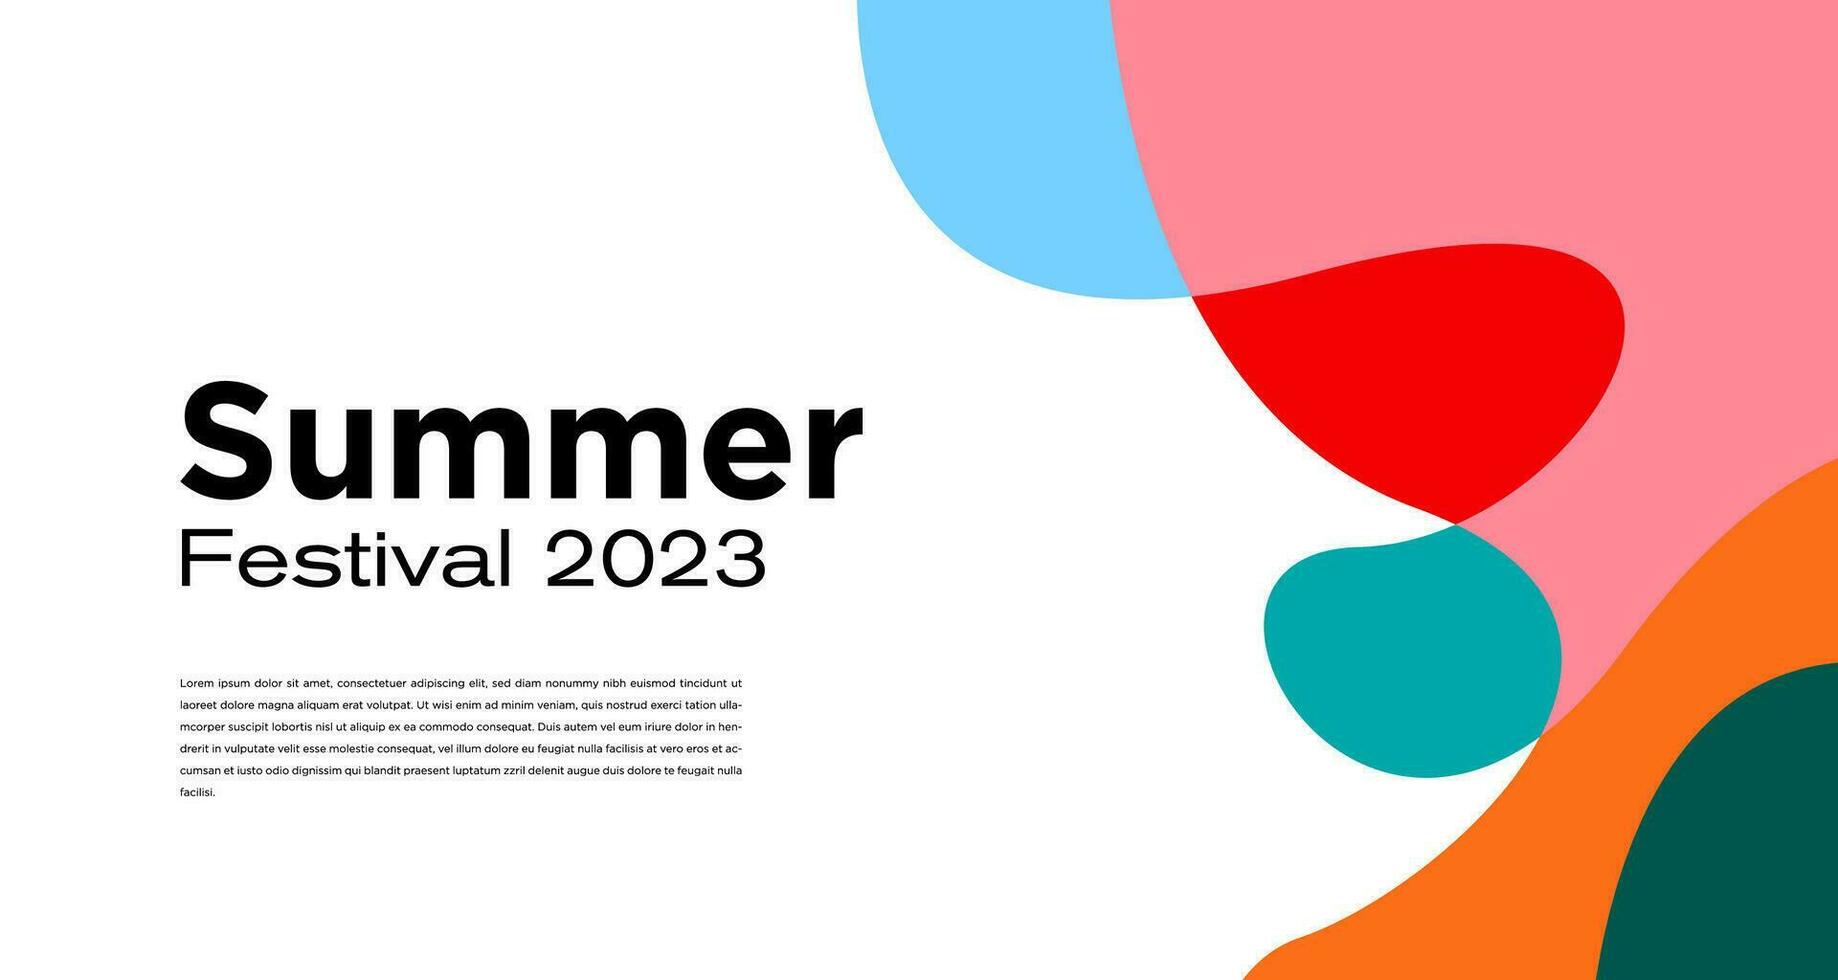 Vektor bunt Flüssigkeit abstrakt Hintergrund zum Sommer- Festival 2023